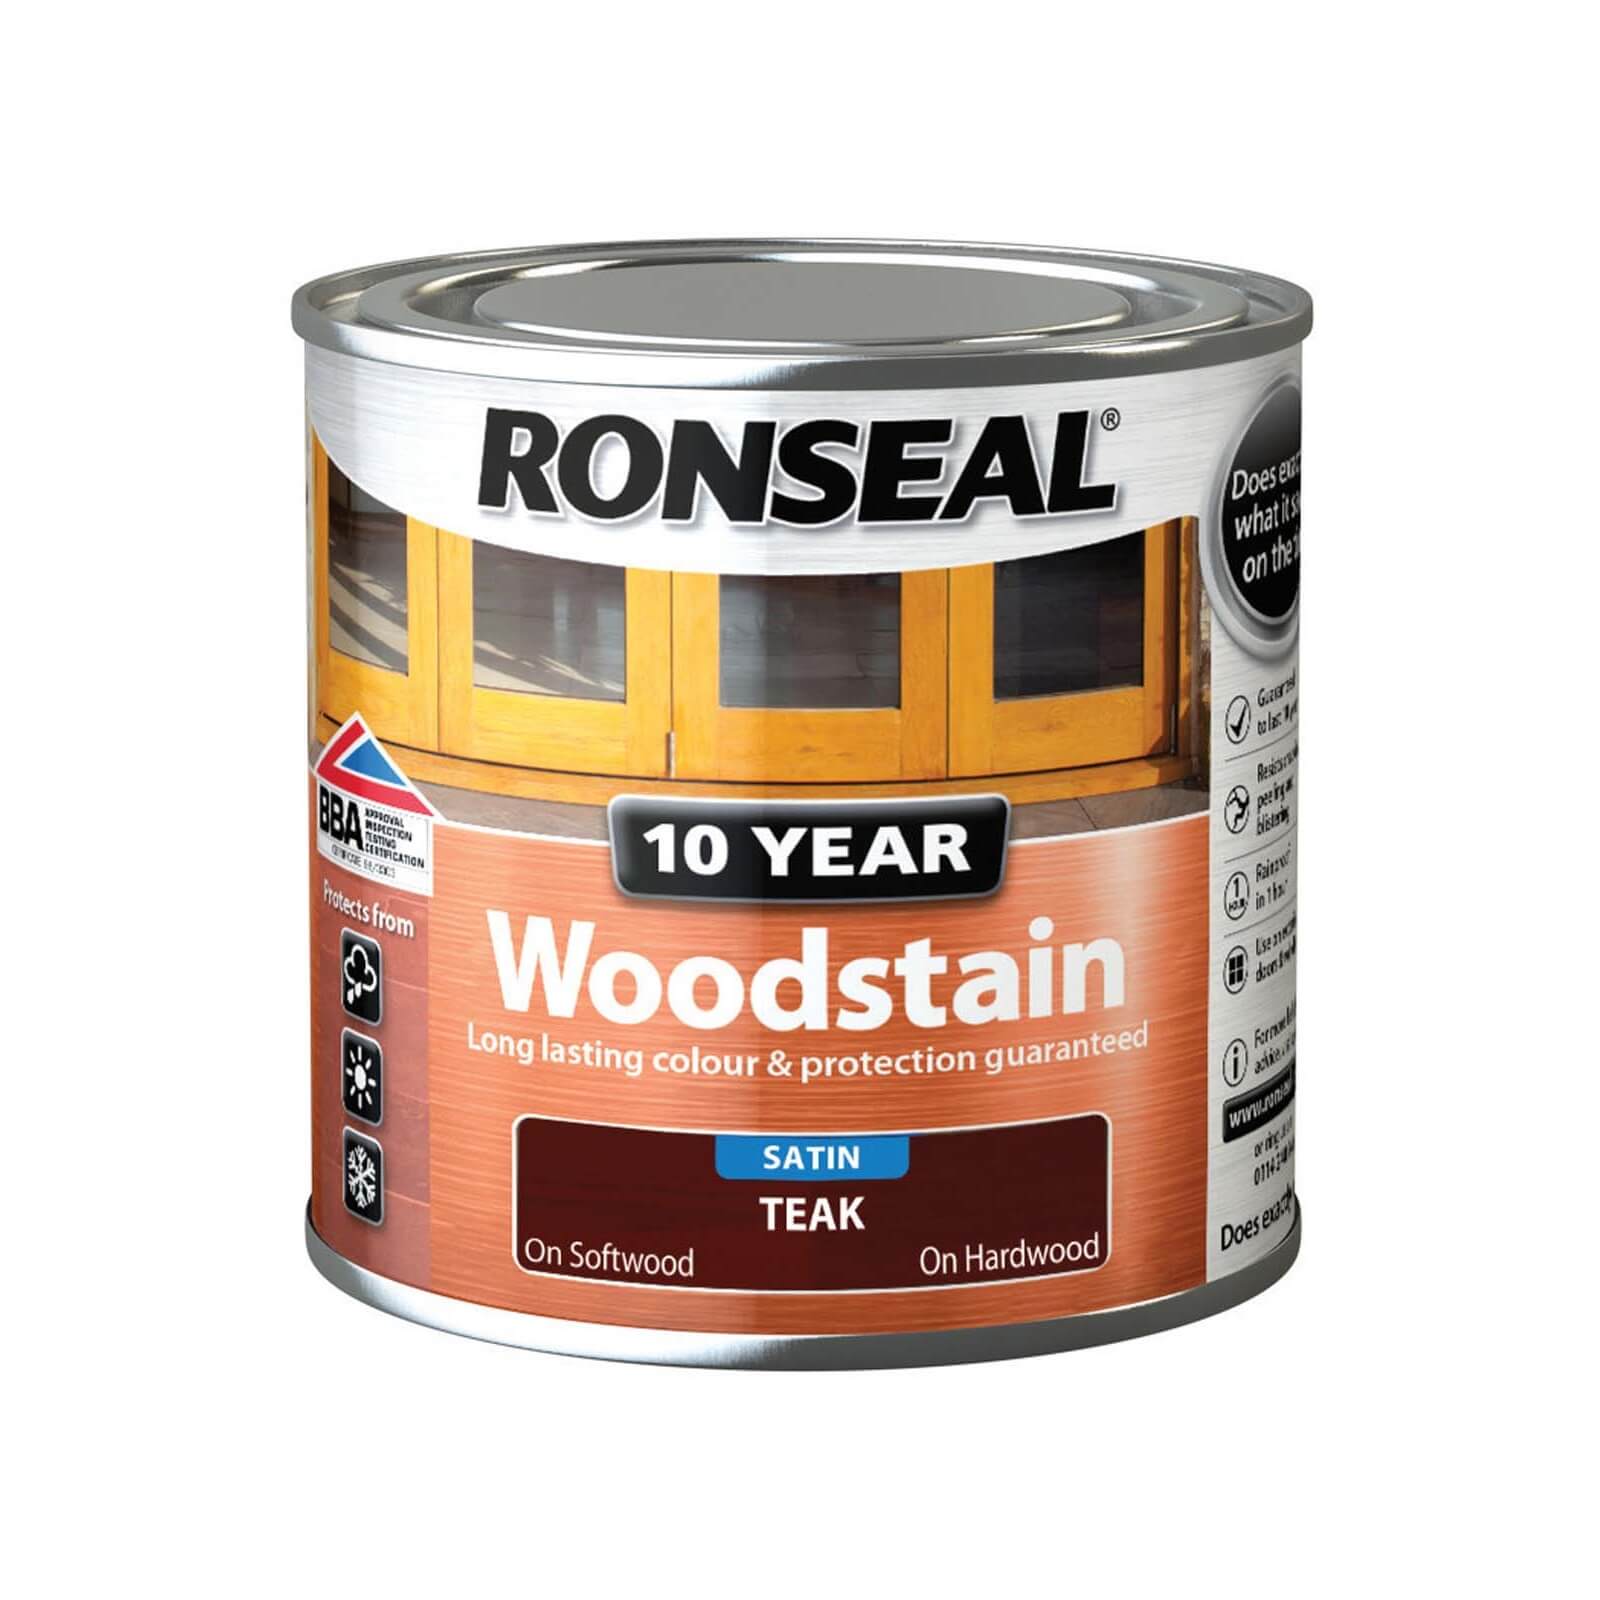 Ronseal 10 Year Woodstain Teak Satin - 250ml